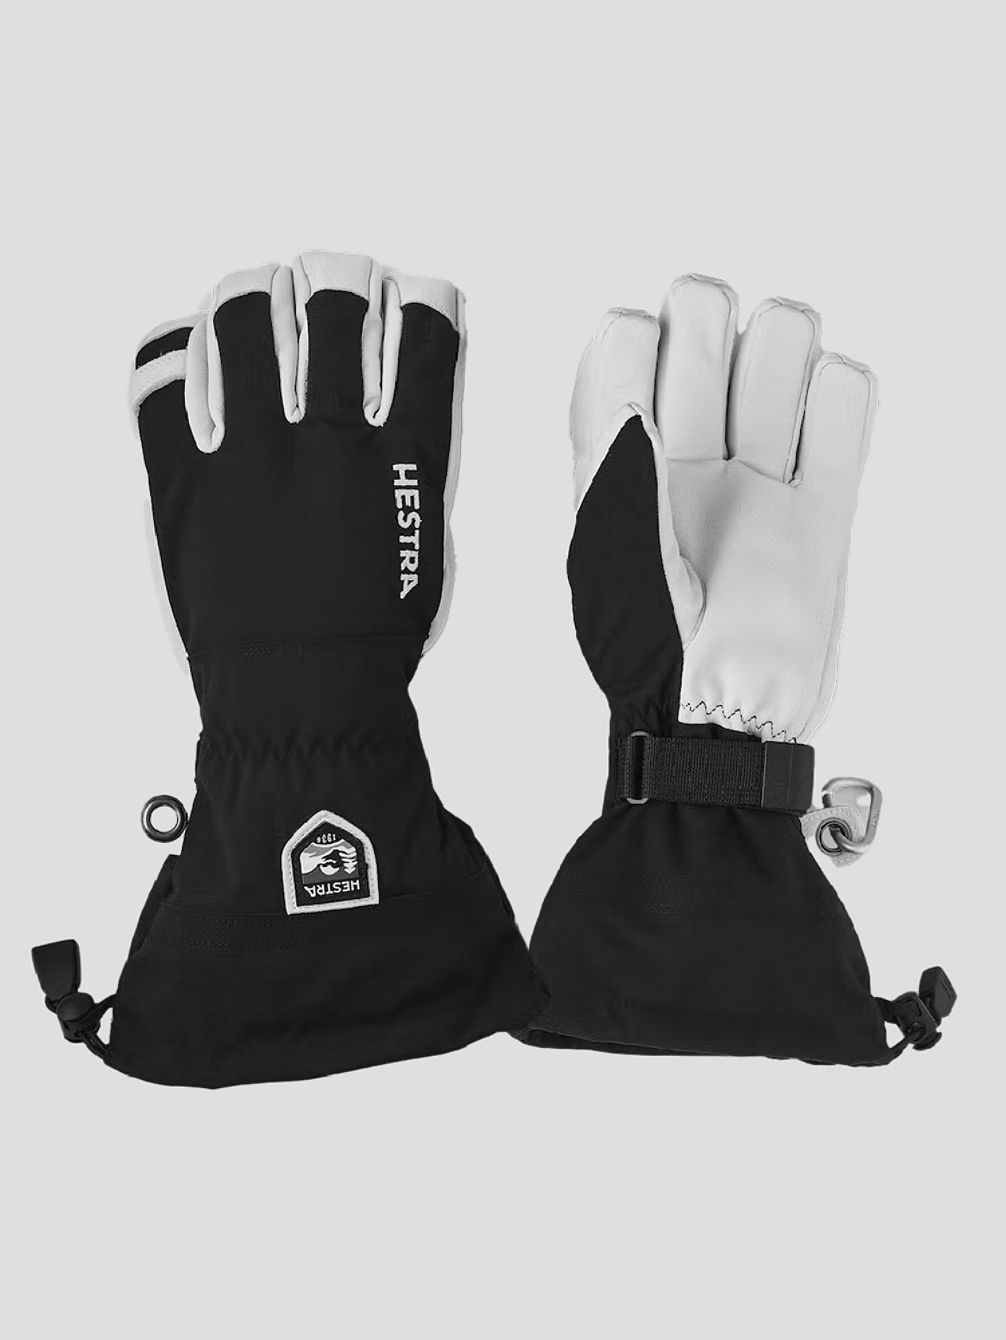 Army Leather Heli Ski Handschuhe